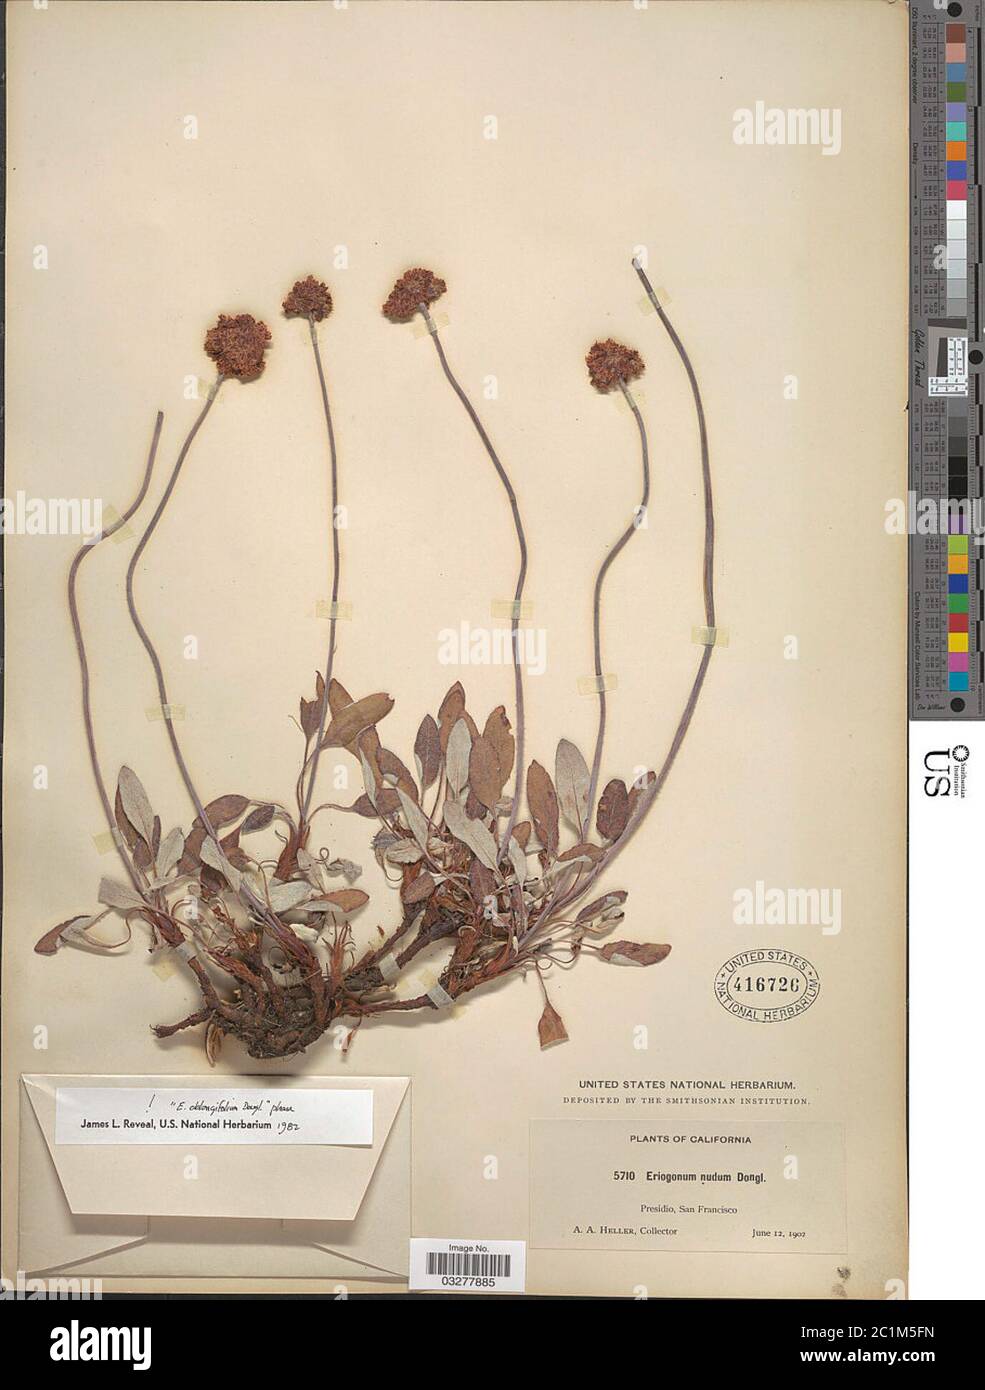 Eriogonum latifolium Sm Eriogonum latifolium Sm. Stock Photo